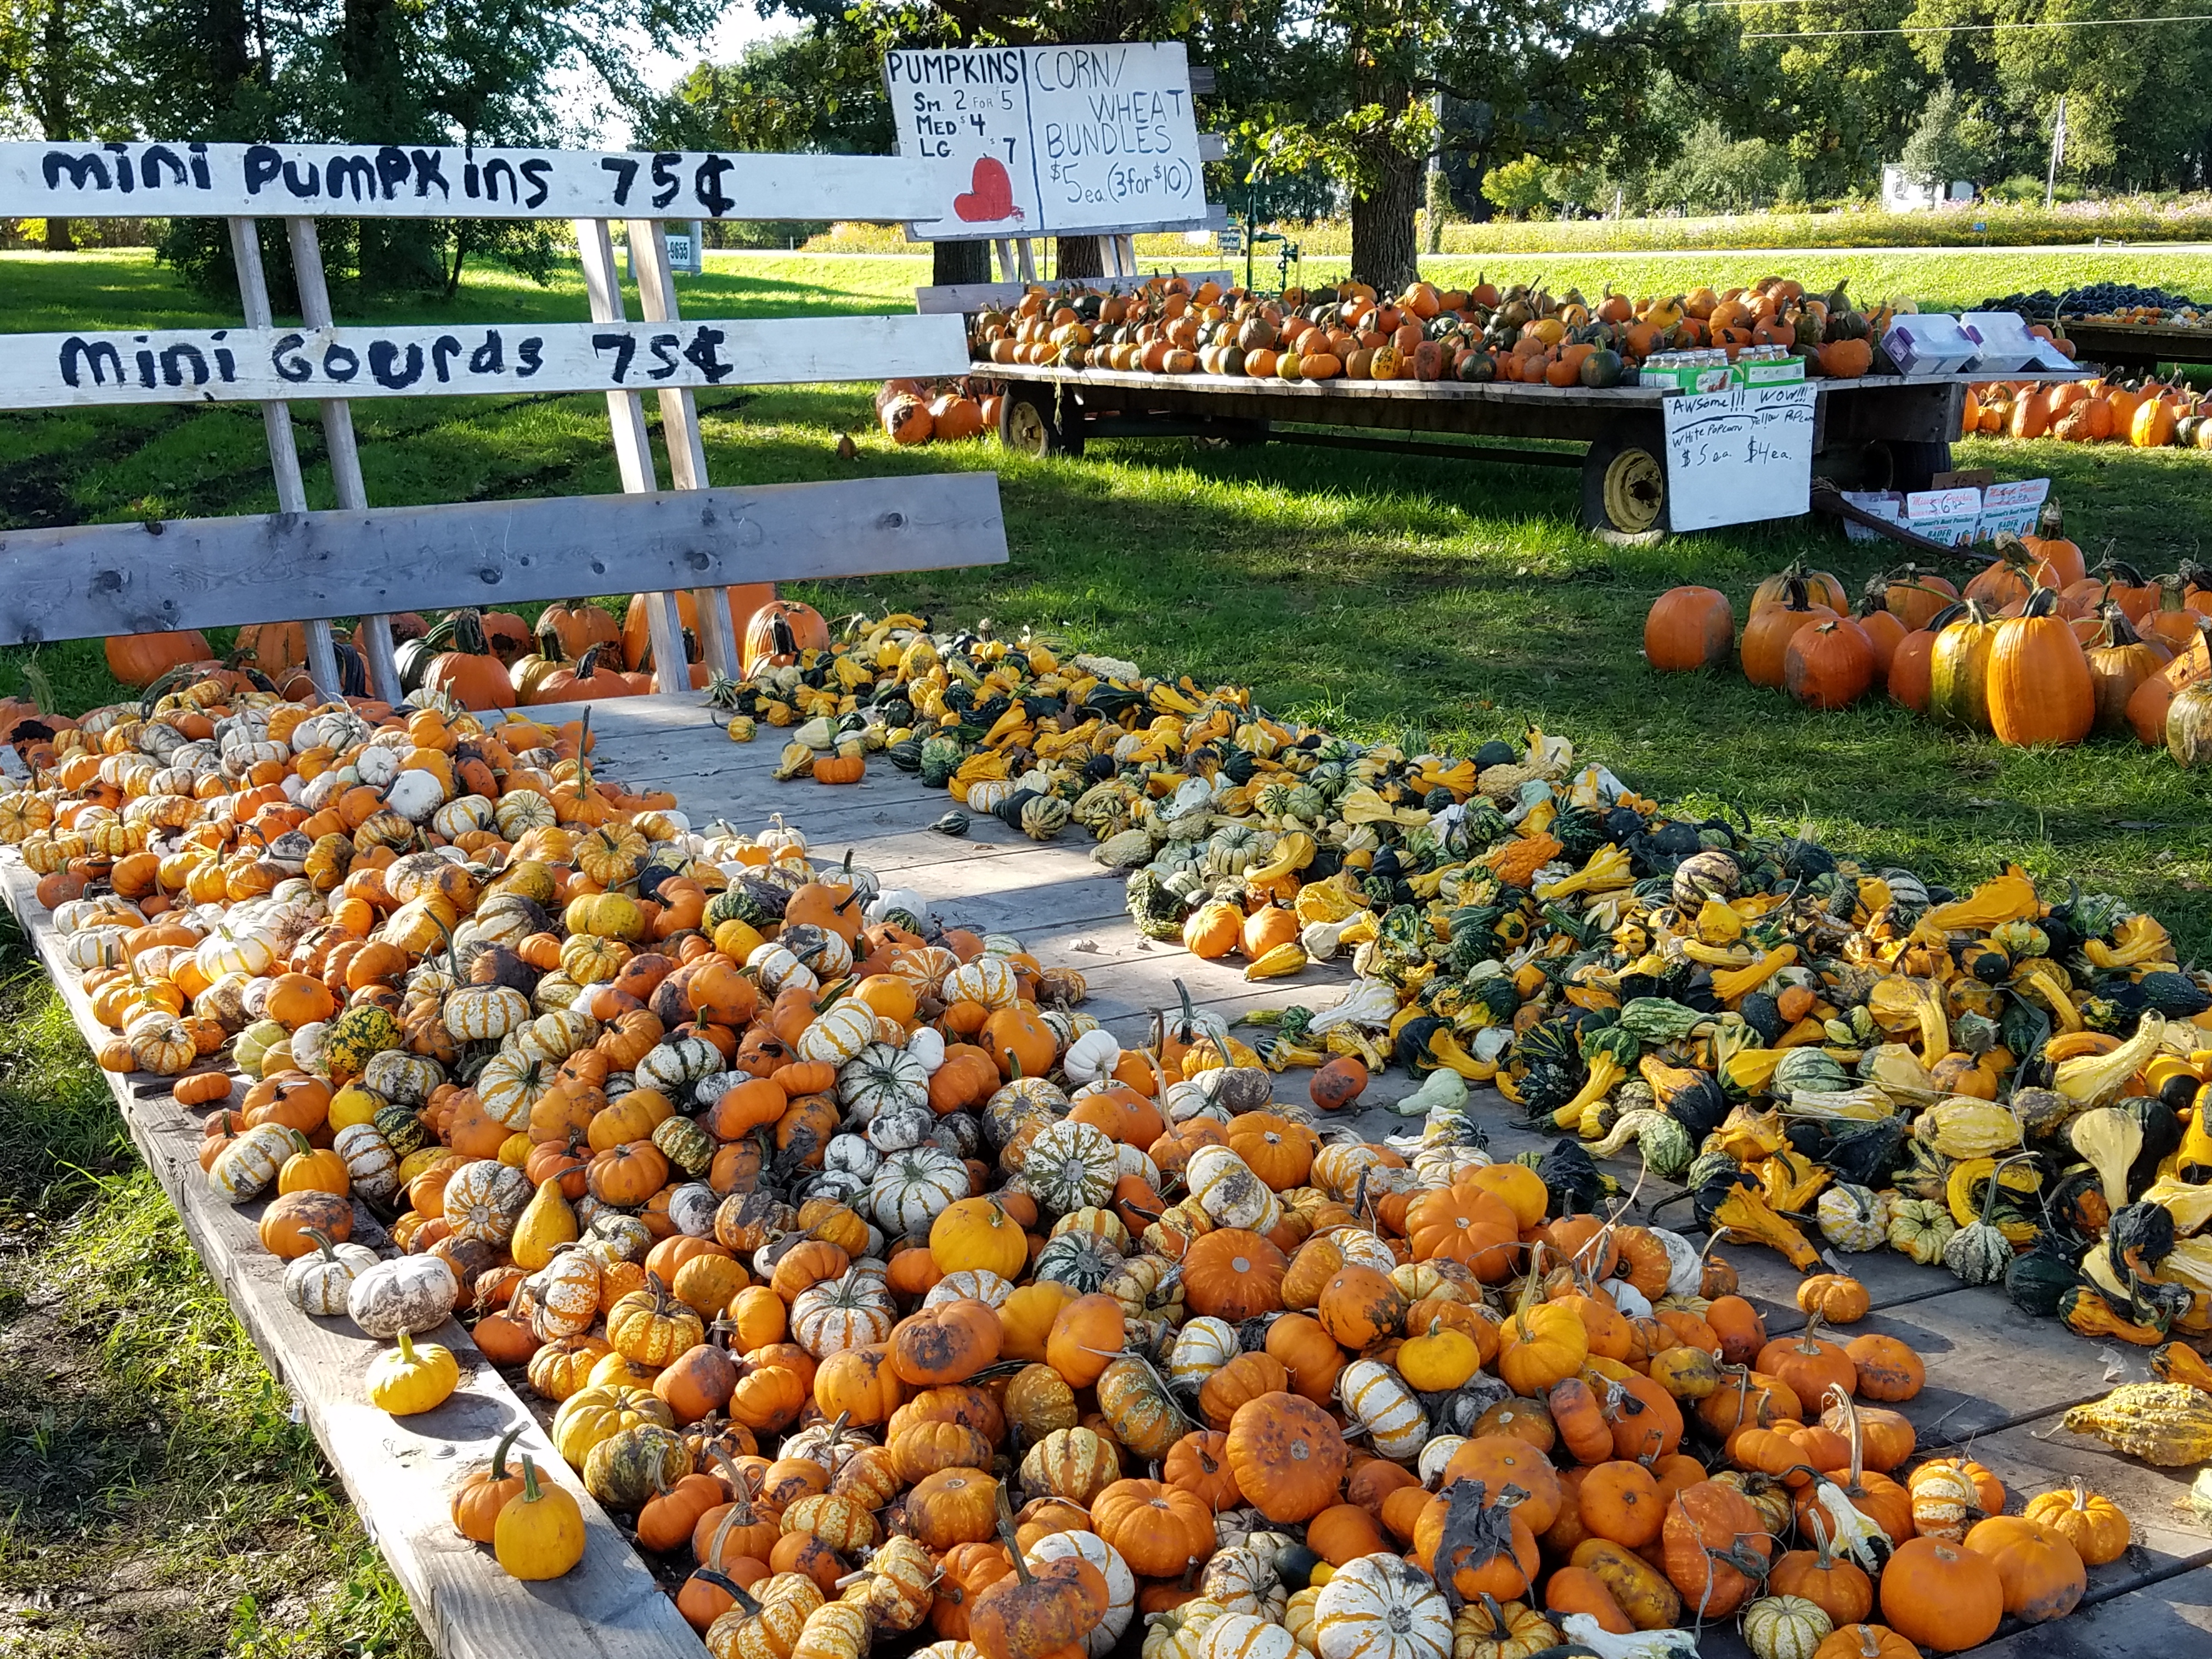 mini-pumpkins-and-gourds-7630.jpg